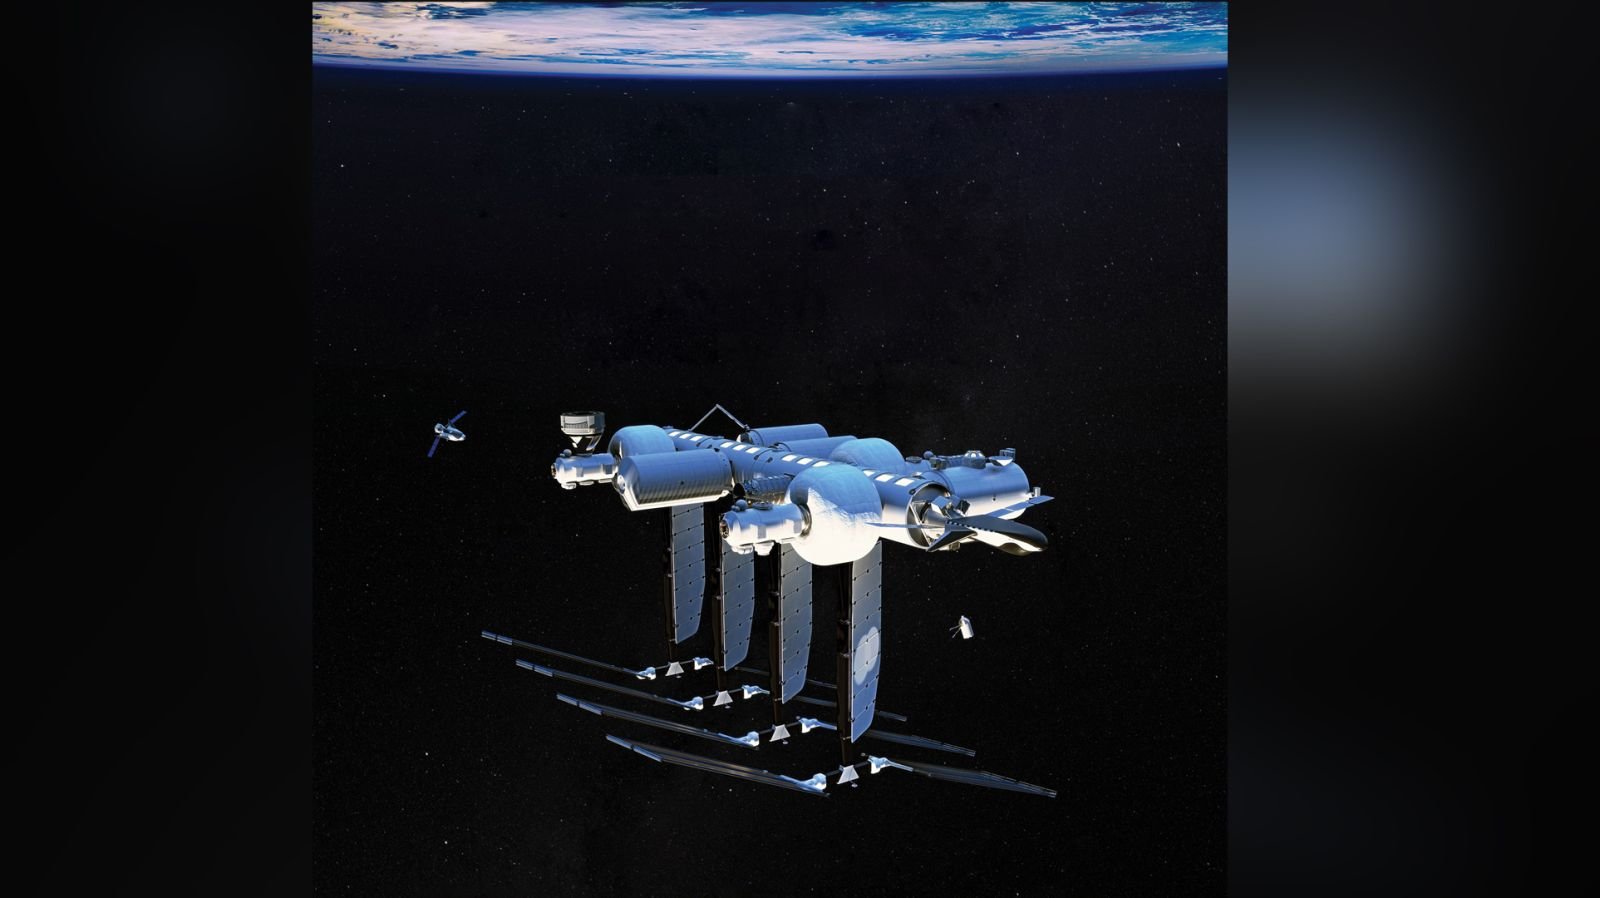 طرحی گرافیکی از ایستگاه فضایی اوربیتال ریف